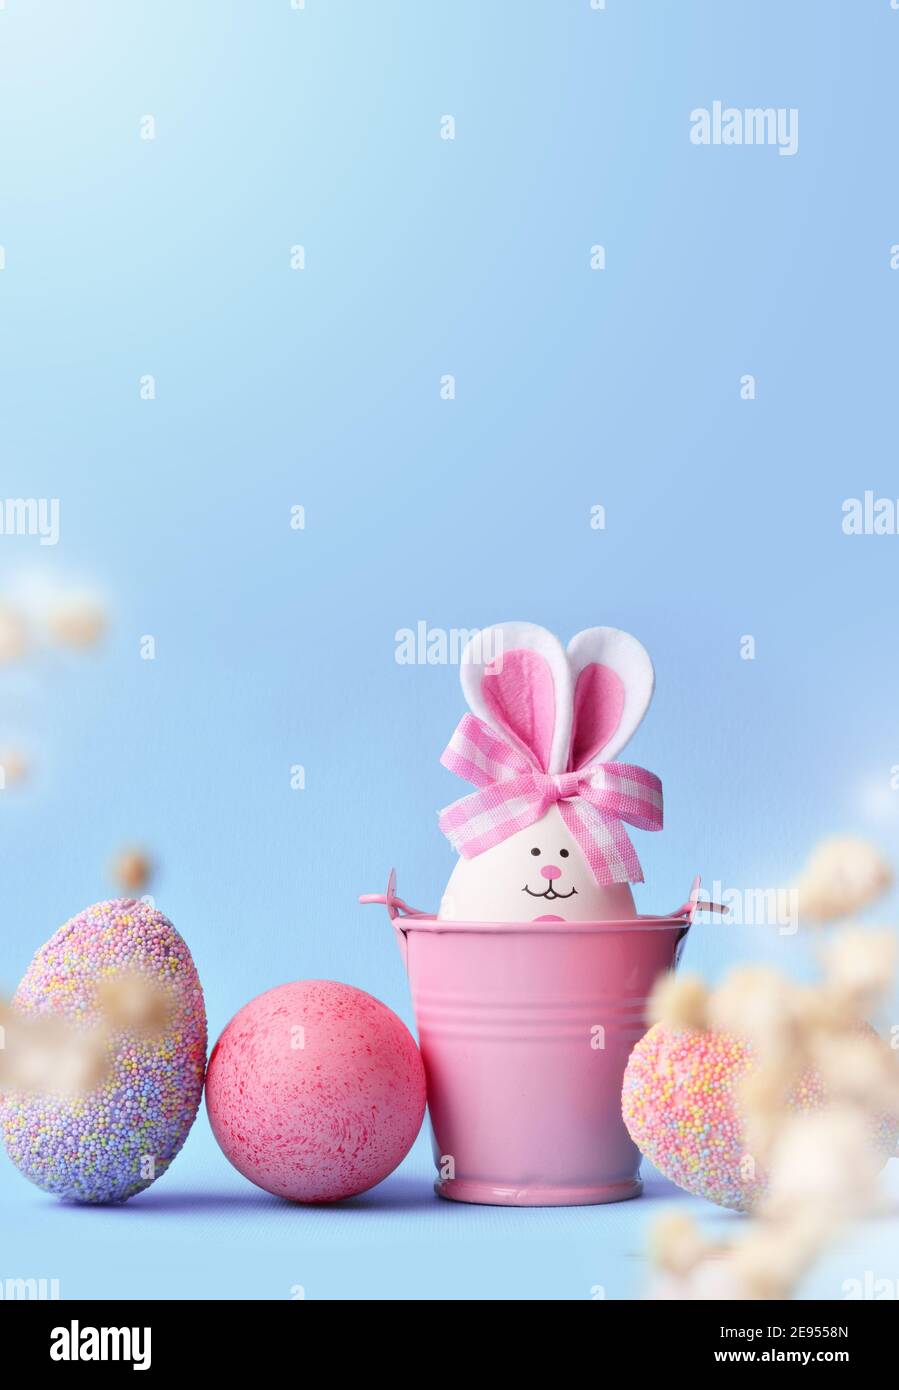 Le concept de vacances de Pâques avec des œufs faits main mignons, un seau et des oreilles de lapin. Décoration de vacances de Pâques. Banque D'Images